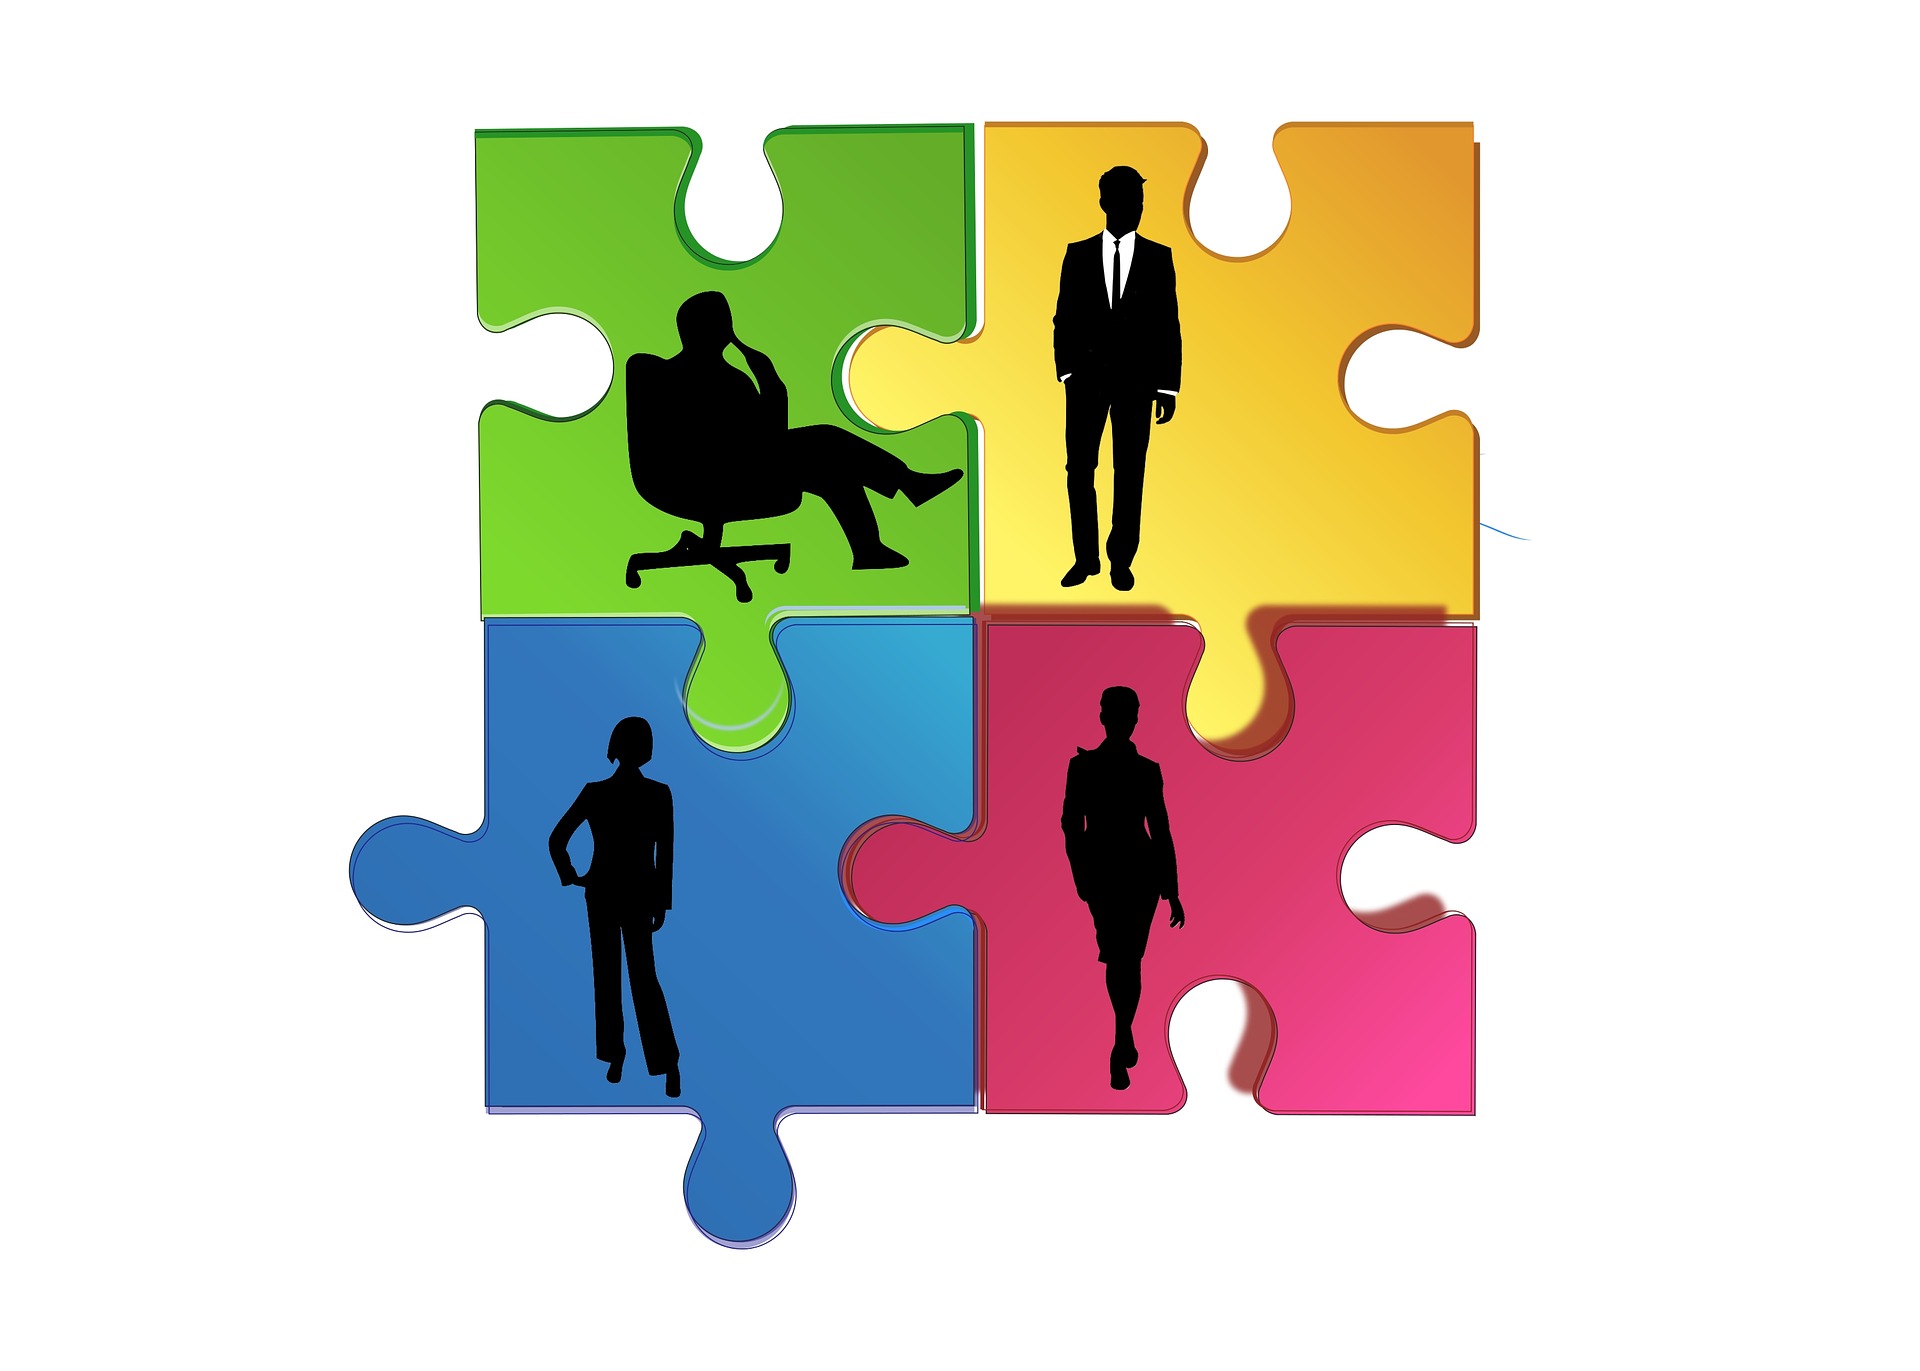 https://pixabay.com/photos/team-building-teamwork-together-3640329/